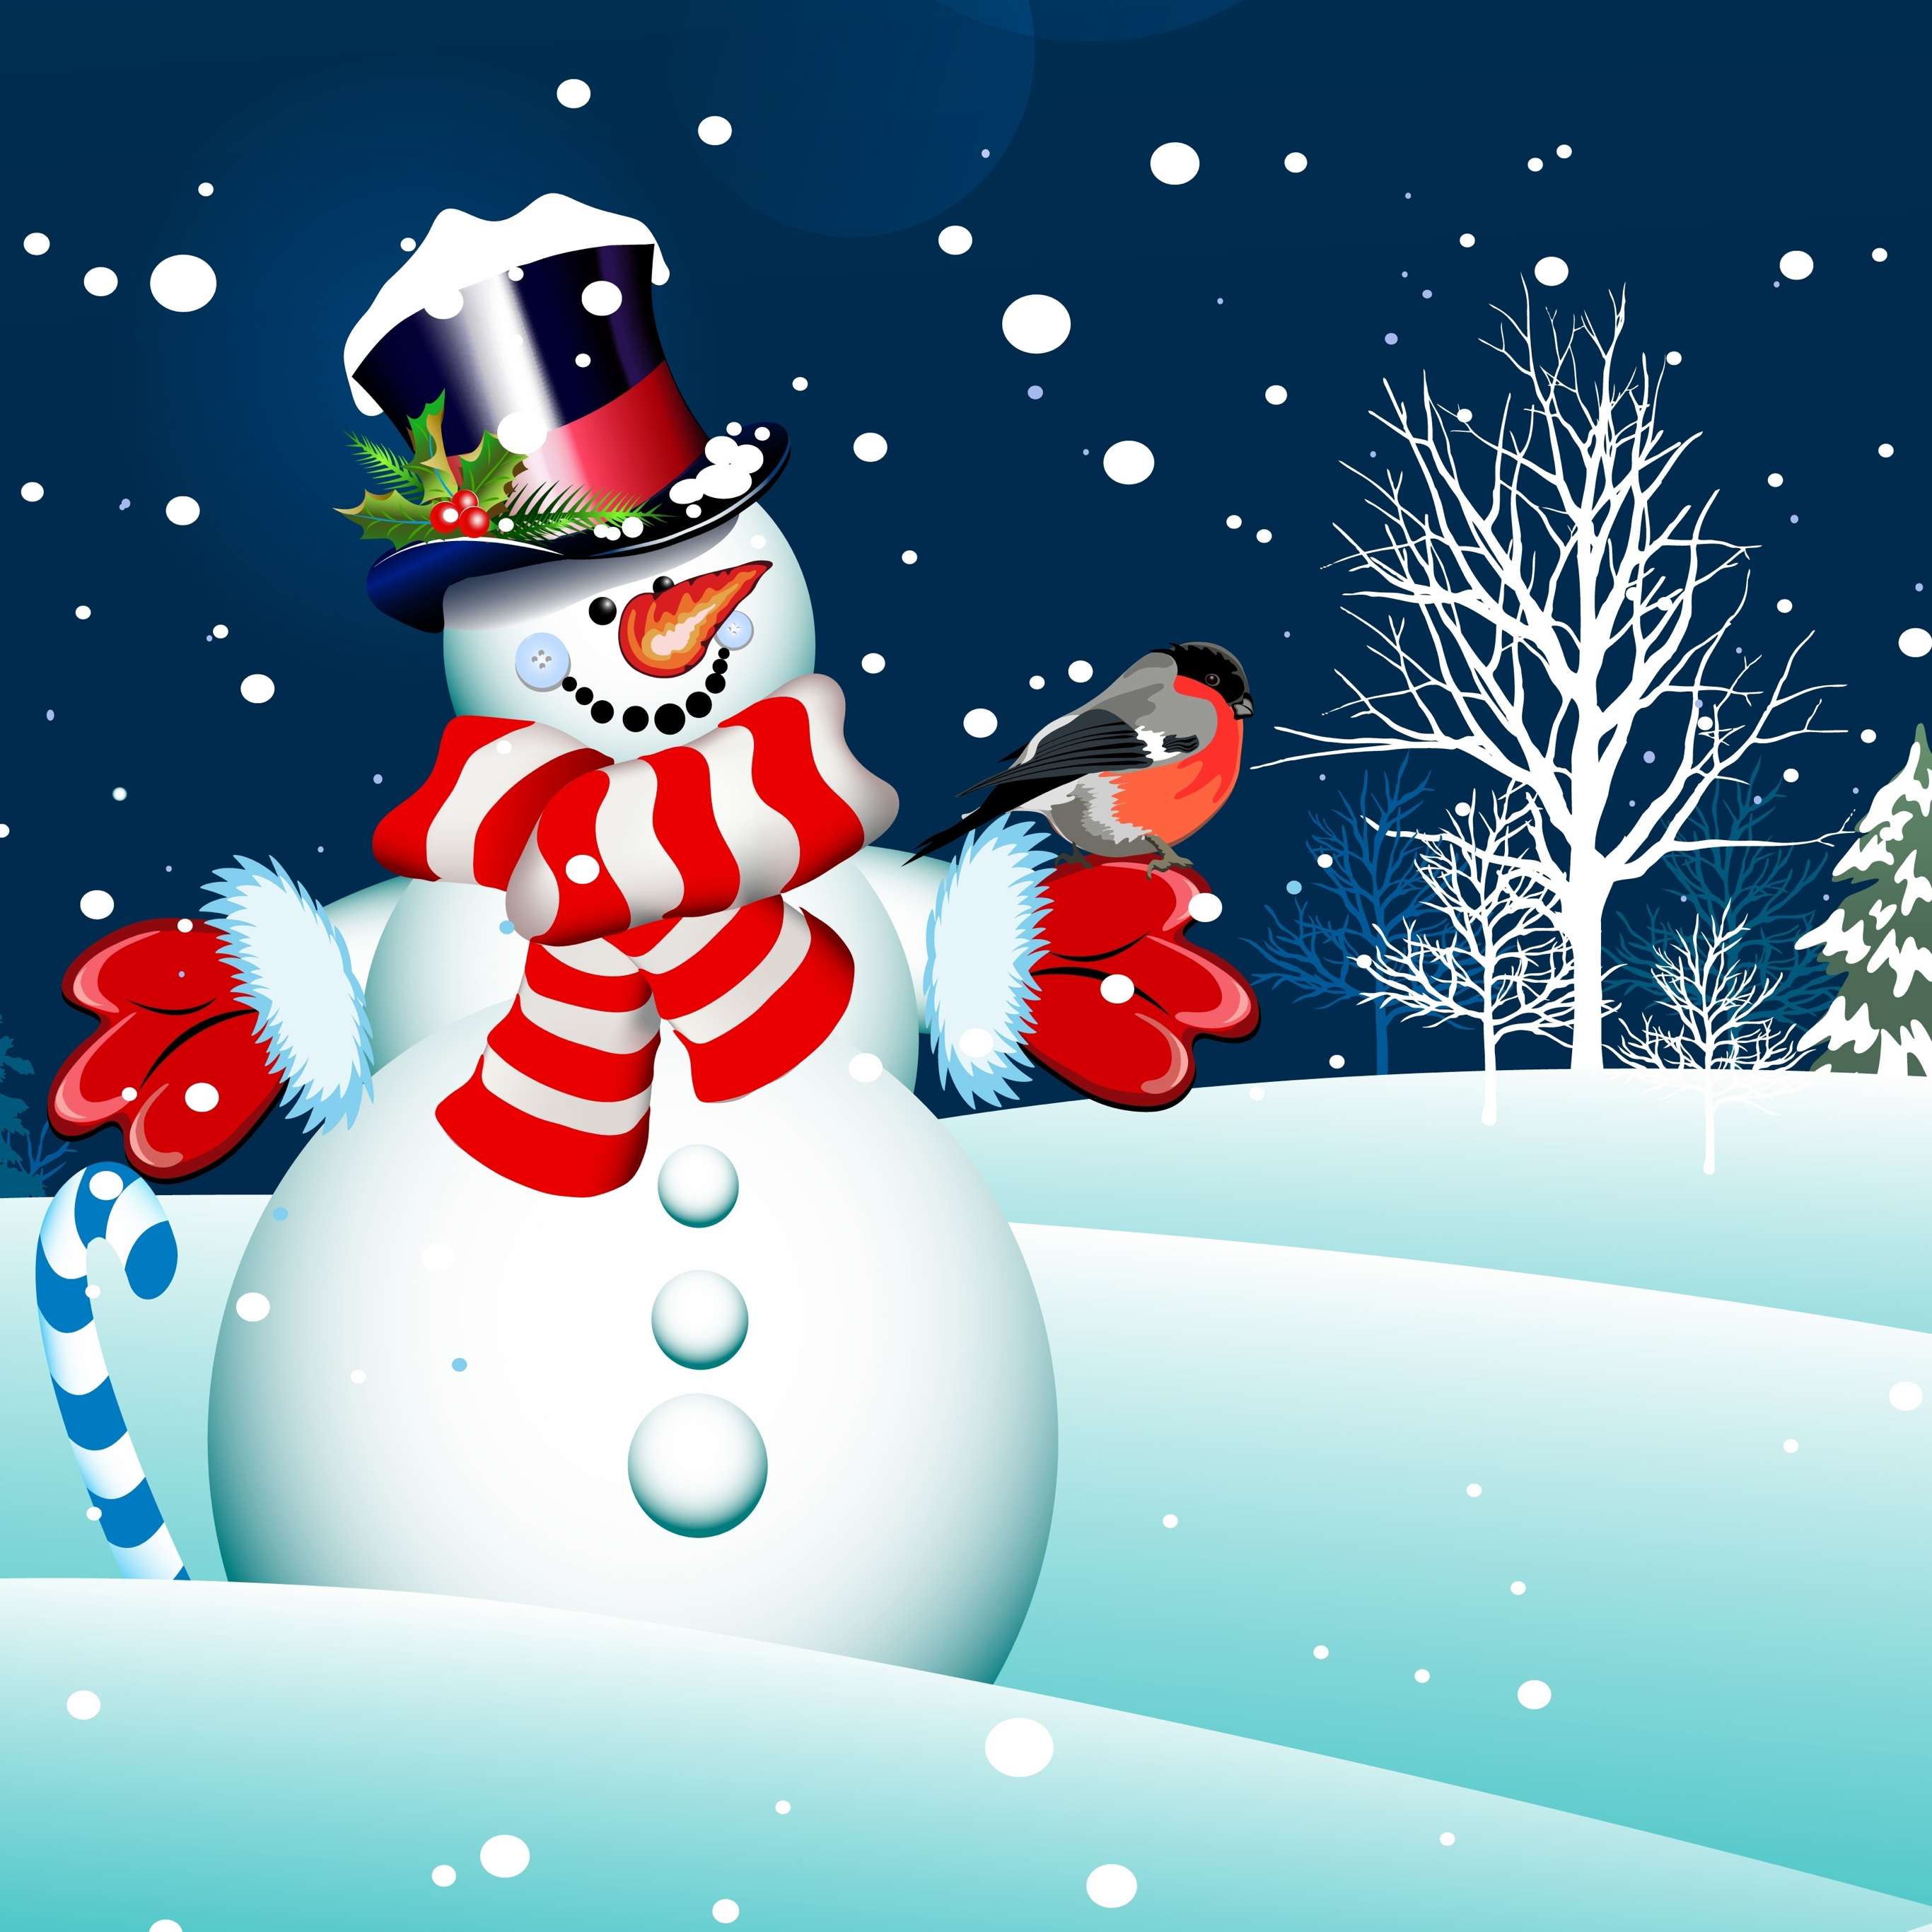 사과 크리스마스 벽지,눈사람,눈,겨울,크리스마스 이브,크리스마스